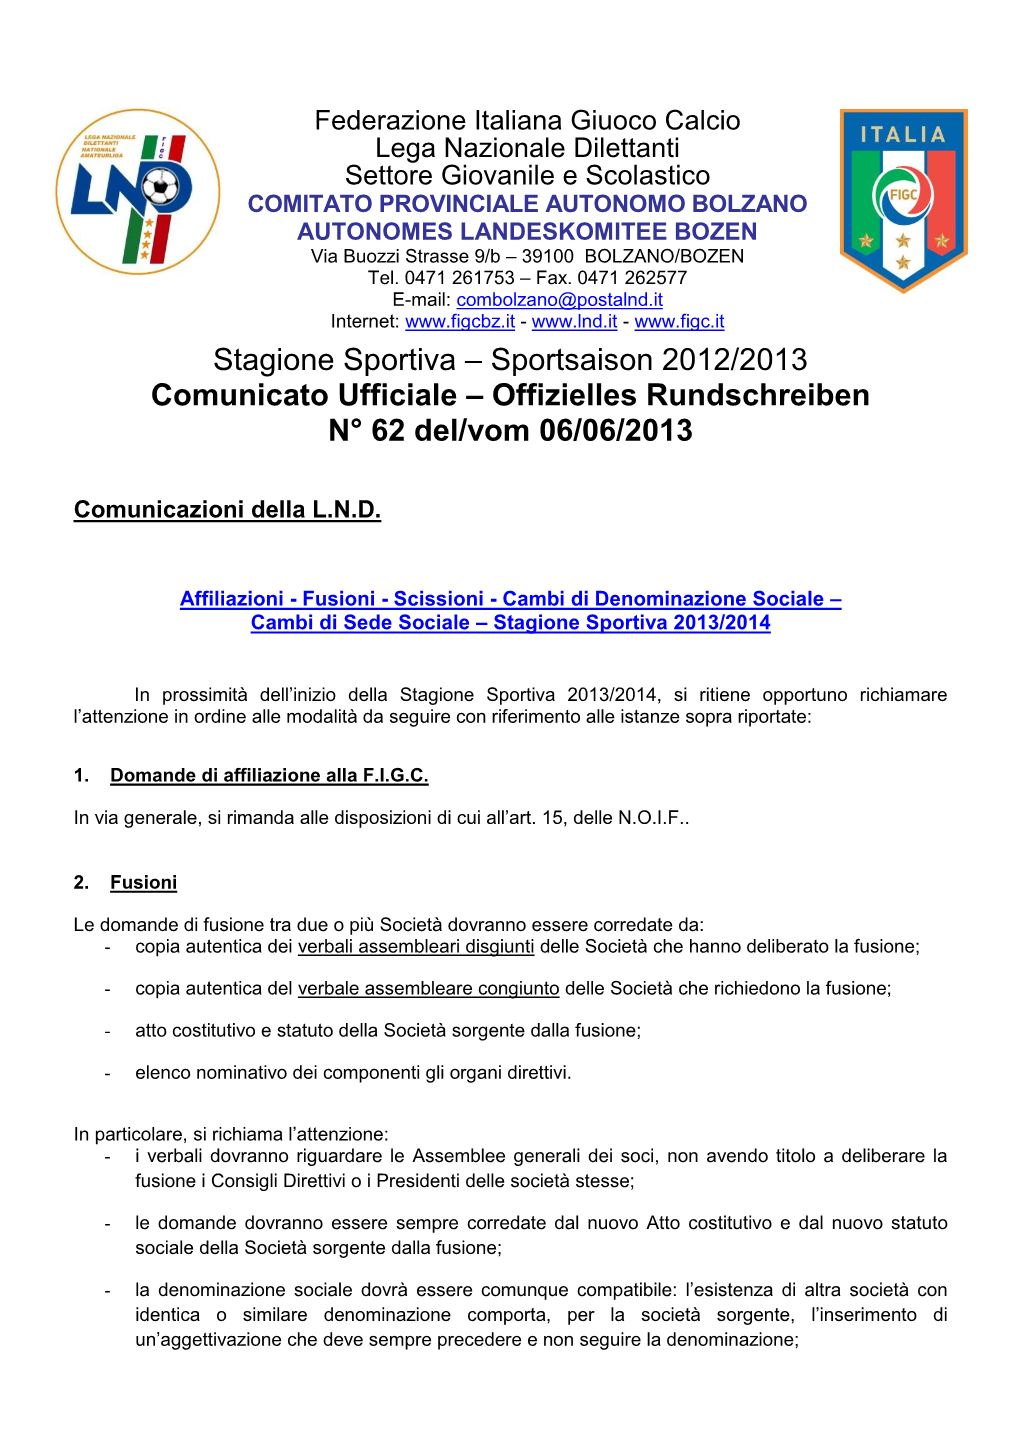 Stagione Sportiva – Sportsaison 2012/2013 Comunicato Ufficiale – Offizielles Rundschreiben N° 62 Del/Vom 06/06/2013